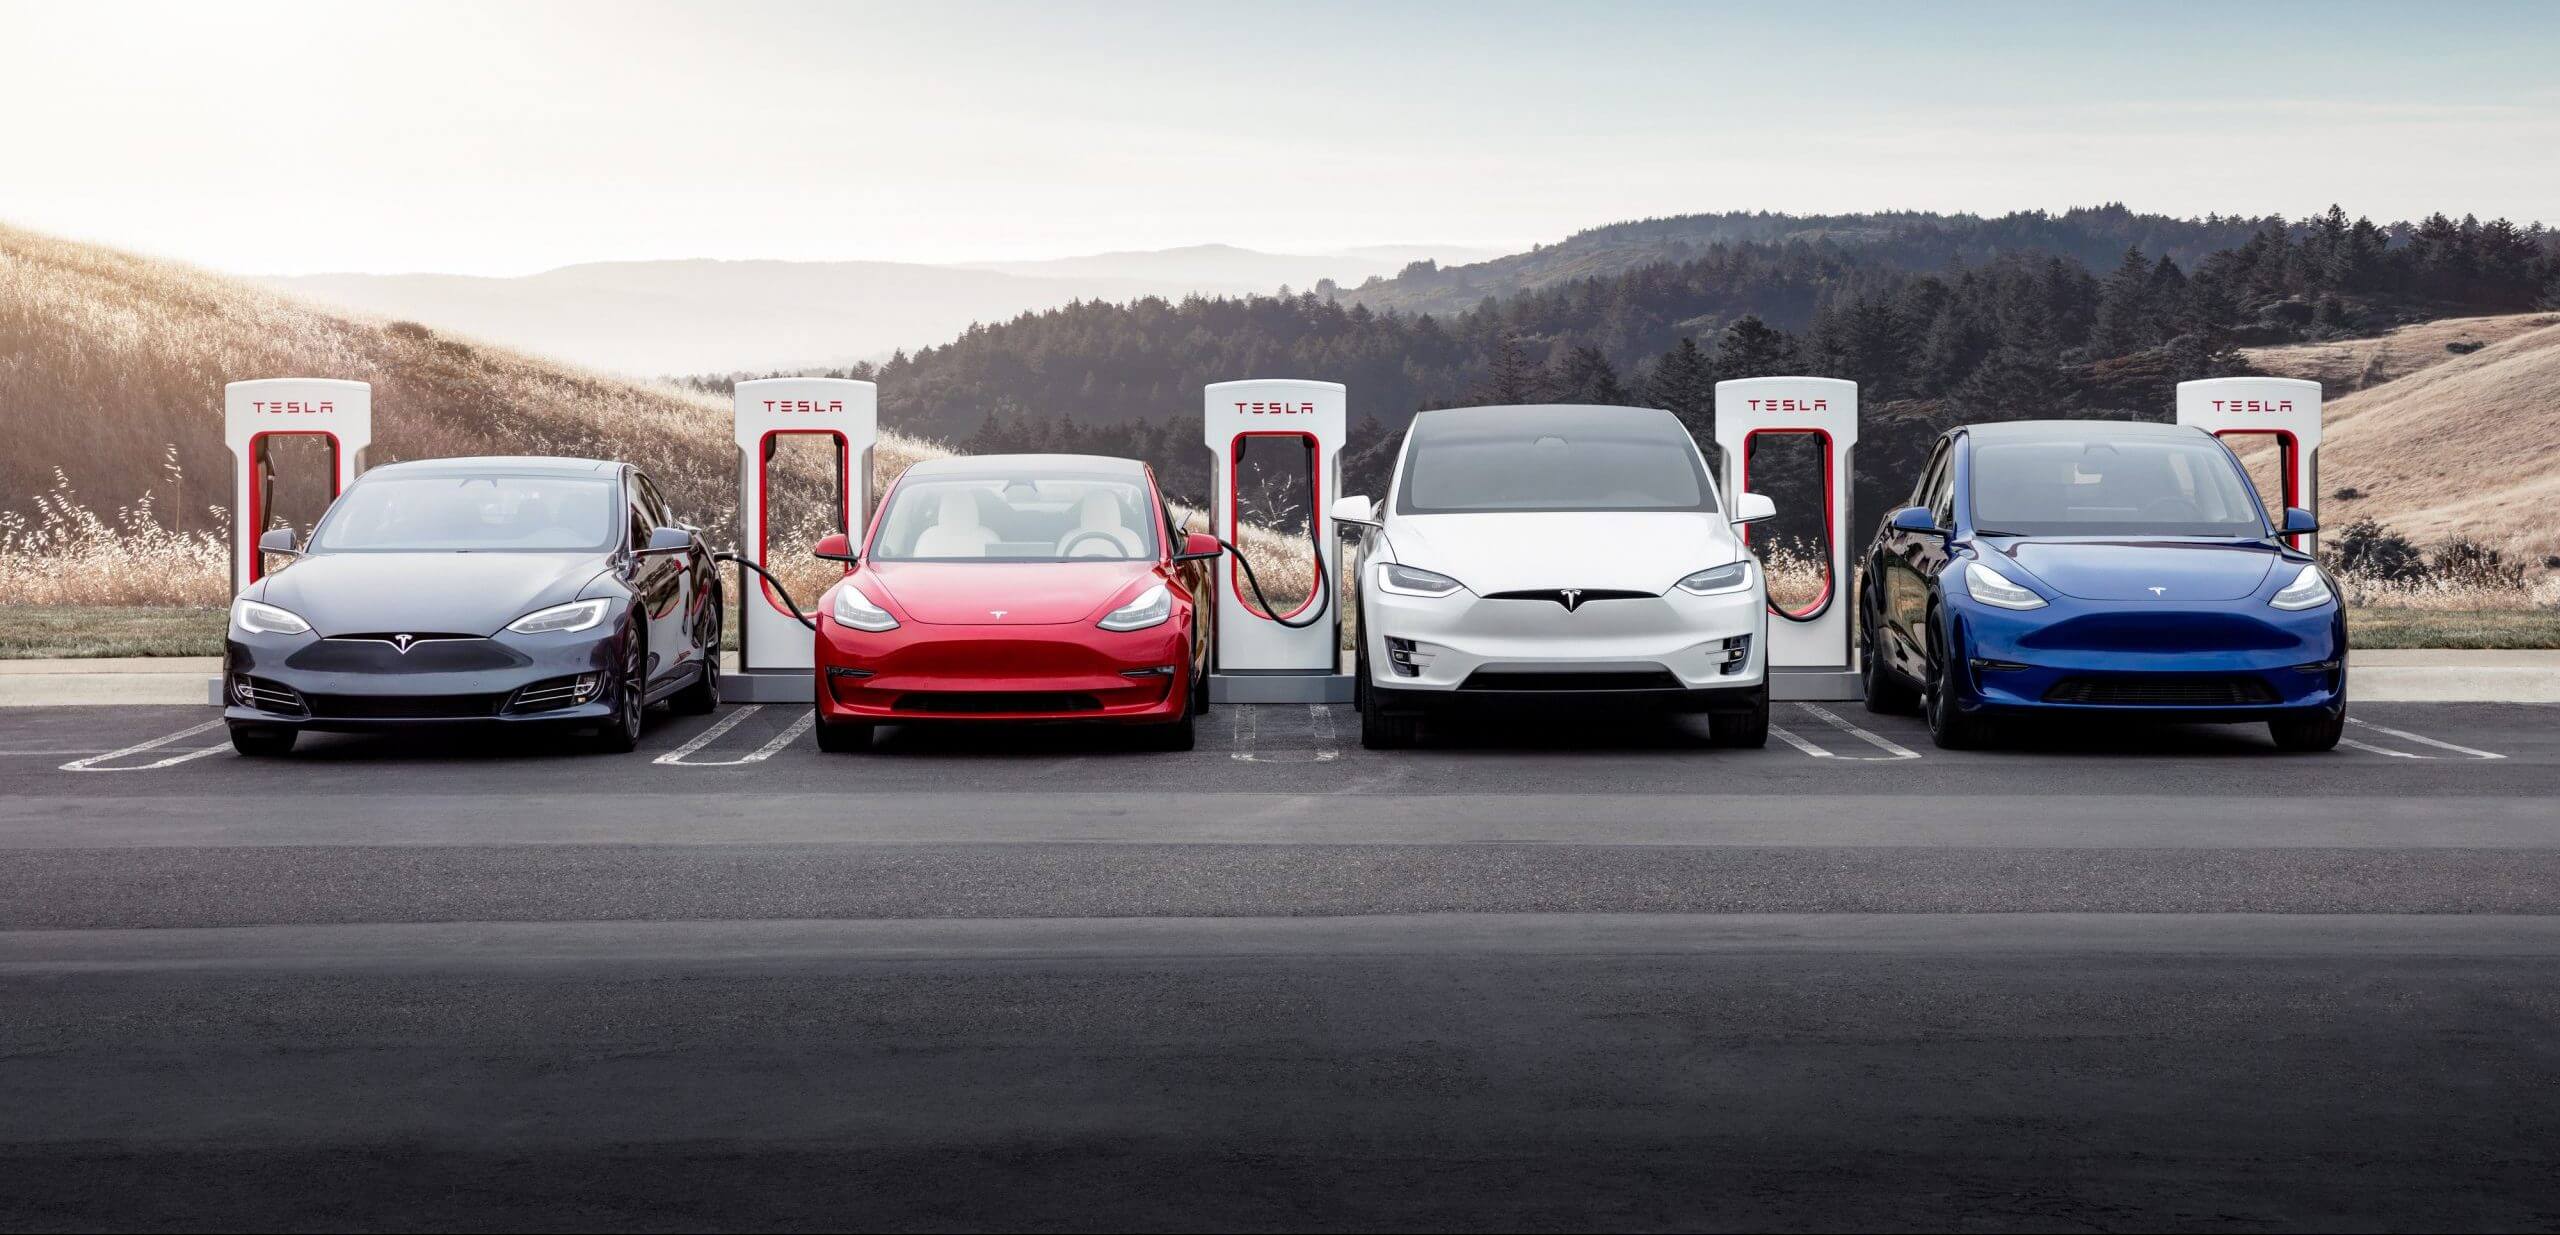 Los recortes de precios de Tesla impulsan el mercado de vehículos eléctricos hacia la asequibilidad con una influencia más amplia